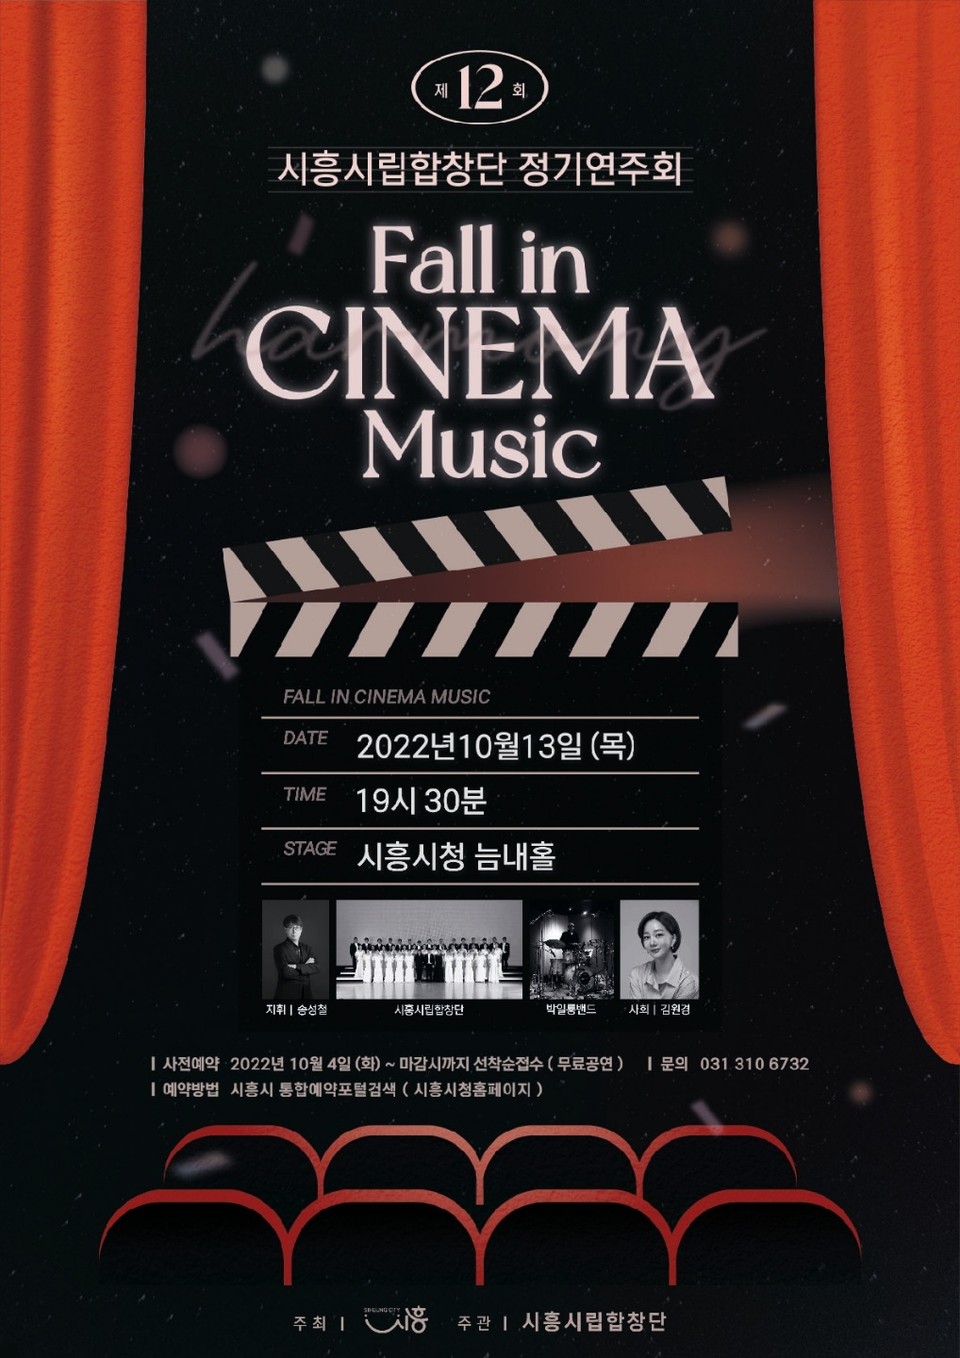 ▲ 시흥시(시장 임병택)는 시흥시립합창단의 제12회 정기연주회 'FALL IN CINEMA MUSIC' 공연을 오는 10월 13일 19시 30분에 시흥시청 늠내홀에서 선보인다고 밝혔다. ⓒ 뉴스피크